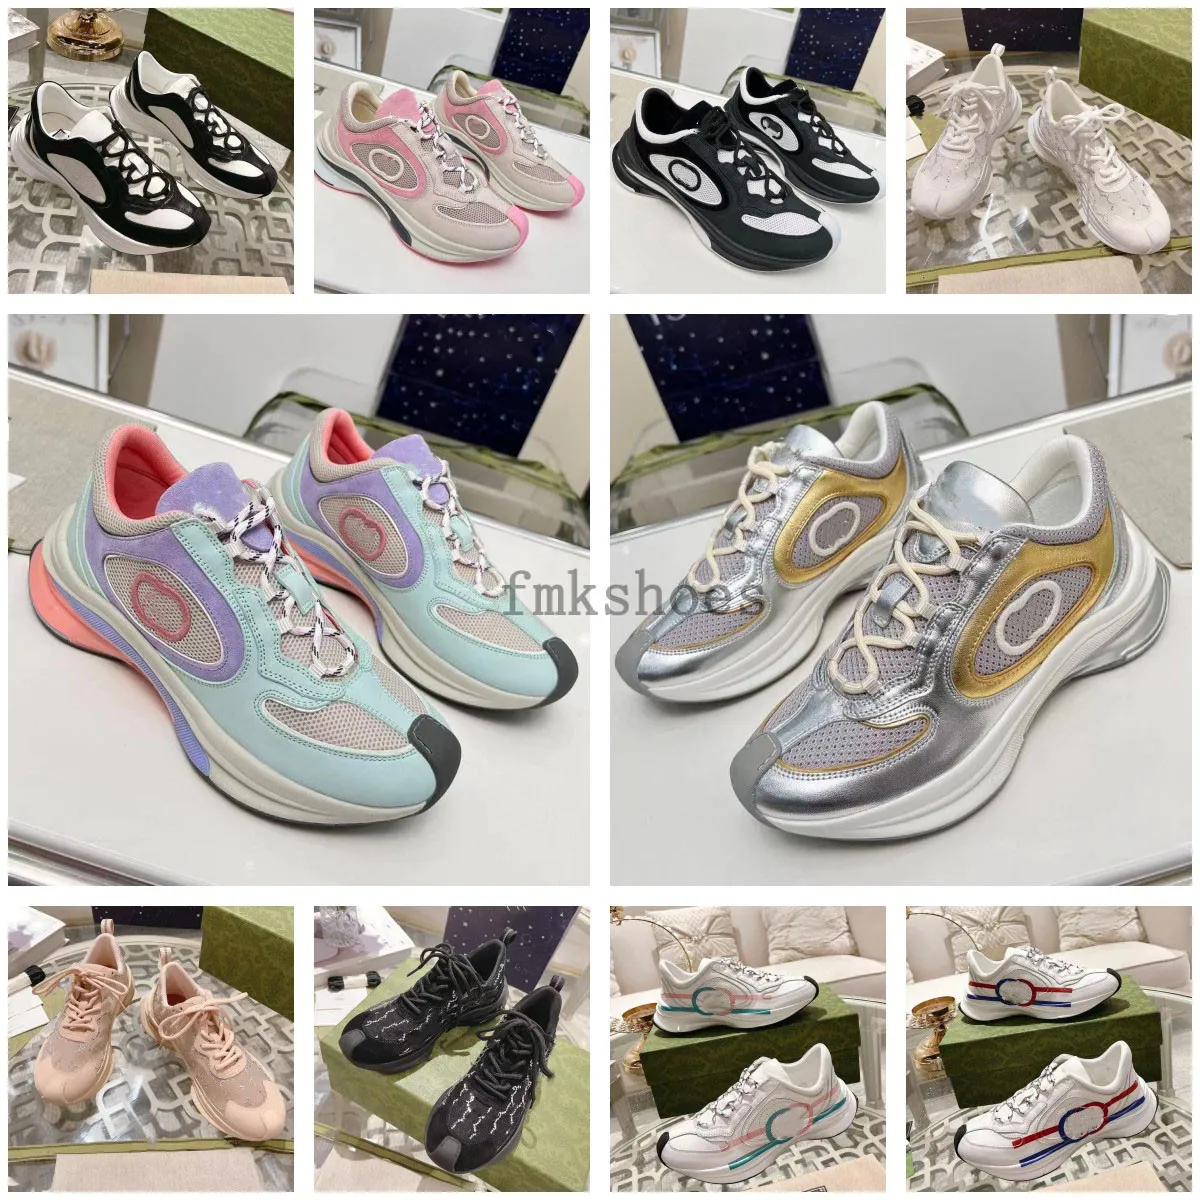 Chaussures de lujo Zapato para mujer Plataforma Rhyton Zapatillas de deporte Zapatos de diseñador Beige hombres mujeres Entrenadores Diseñadores Vintage RUN Sneaker tamaño 35-45 3.20 01